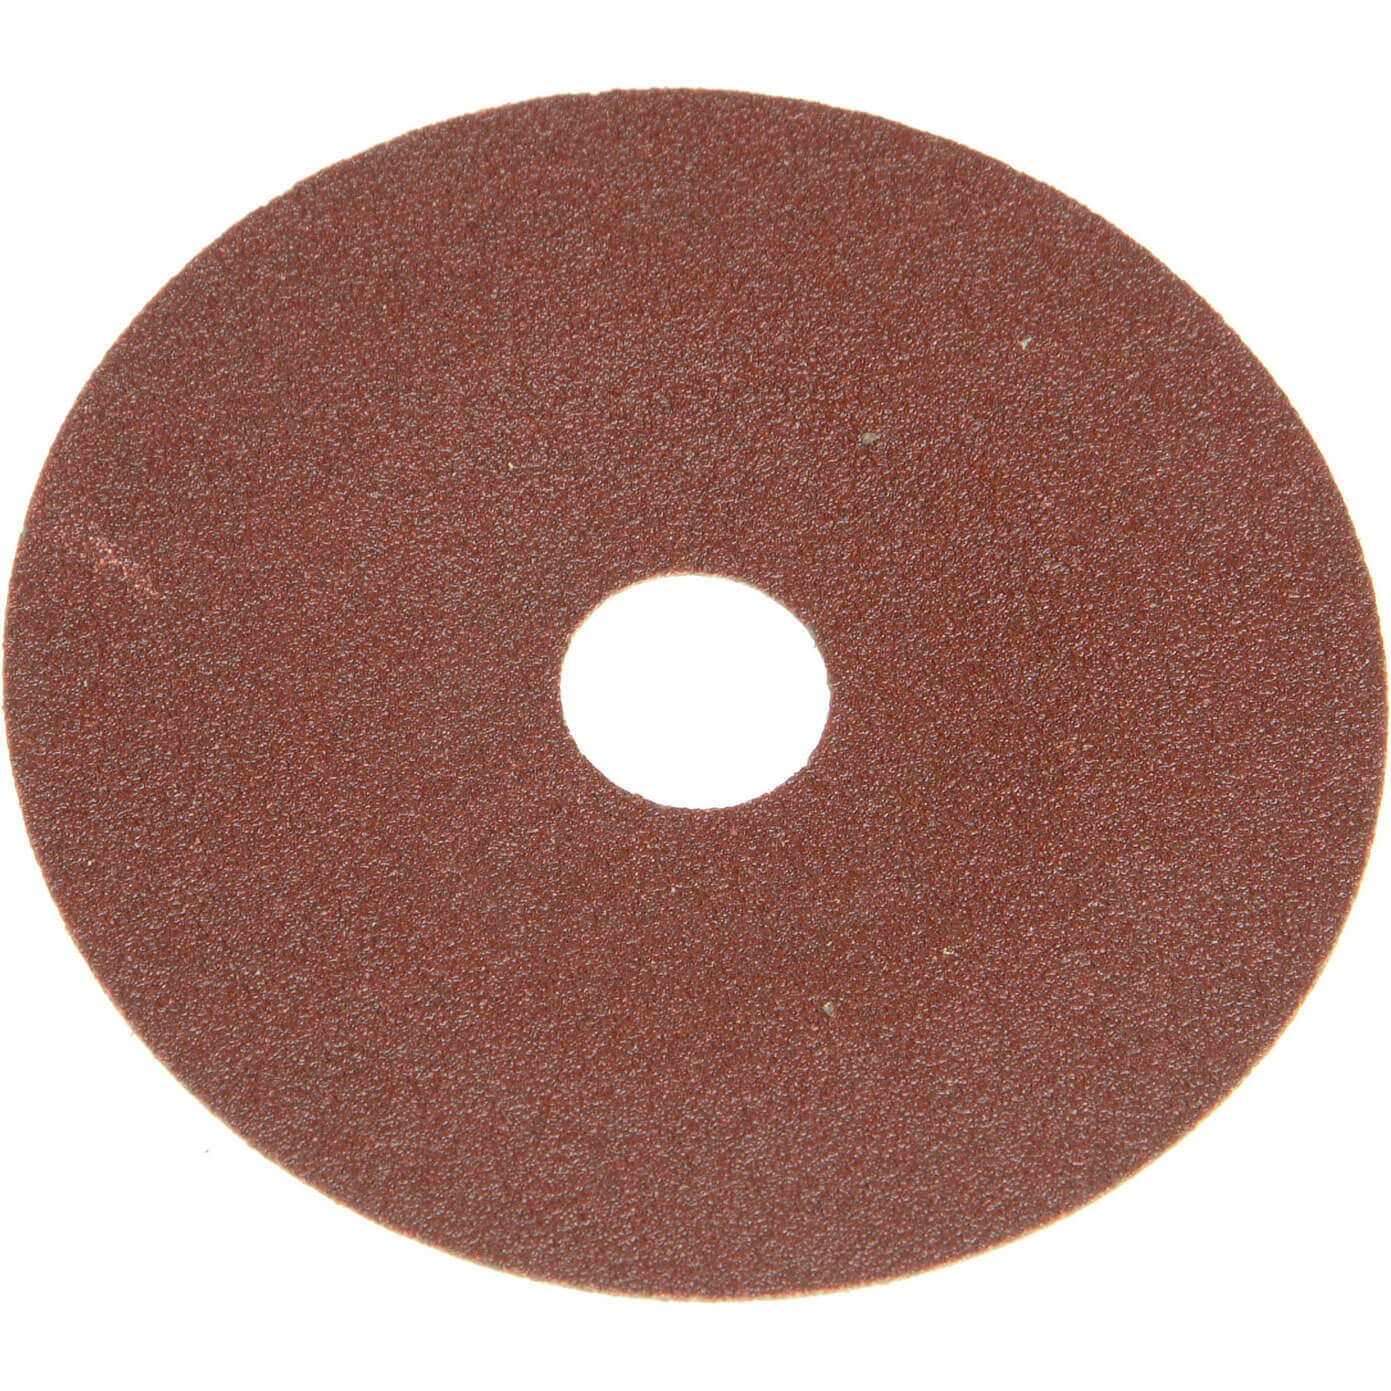 Photos - Abrasive Wheel / Belt Faithfull 178mm Resin Bonded Sanding Discs 178mm 60g Pack of 25 FAIAD17860 